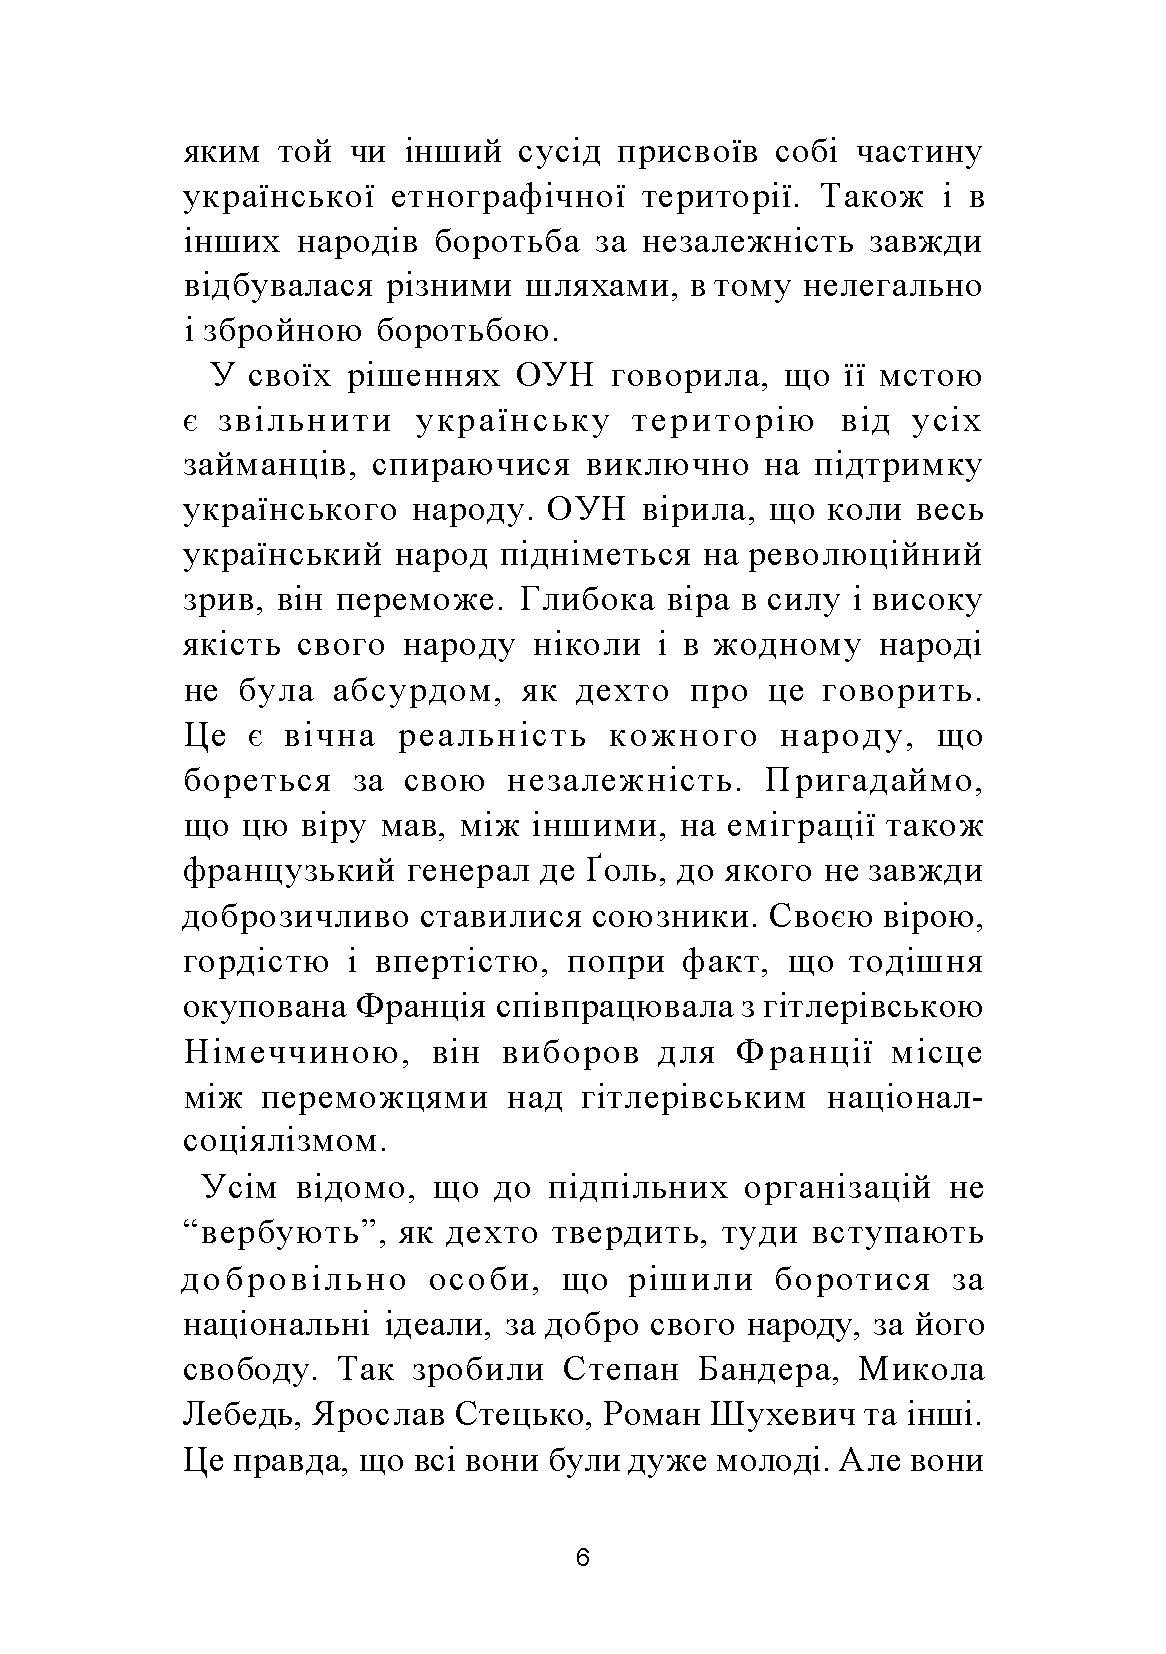 ПРАВДА ІСТОРІЇ: Роки окупації України 1939-1944. Автор — Володимир Косик. 